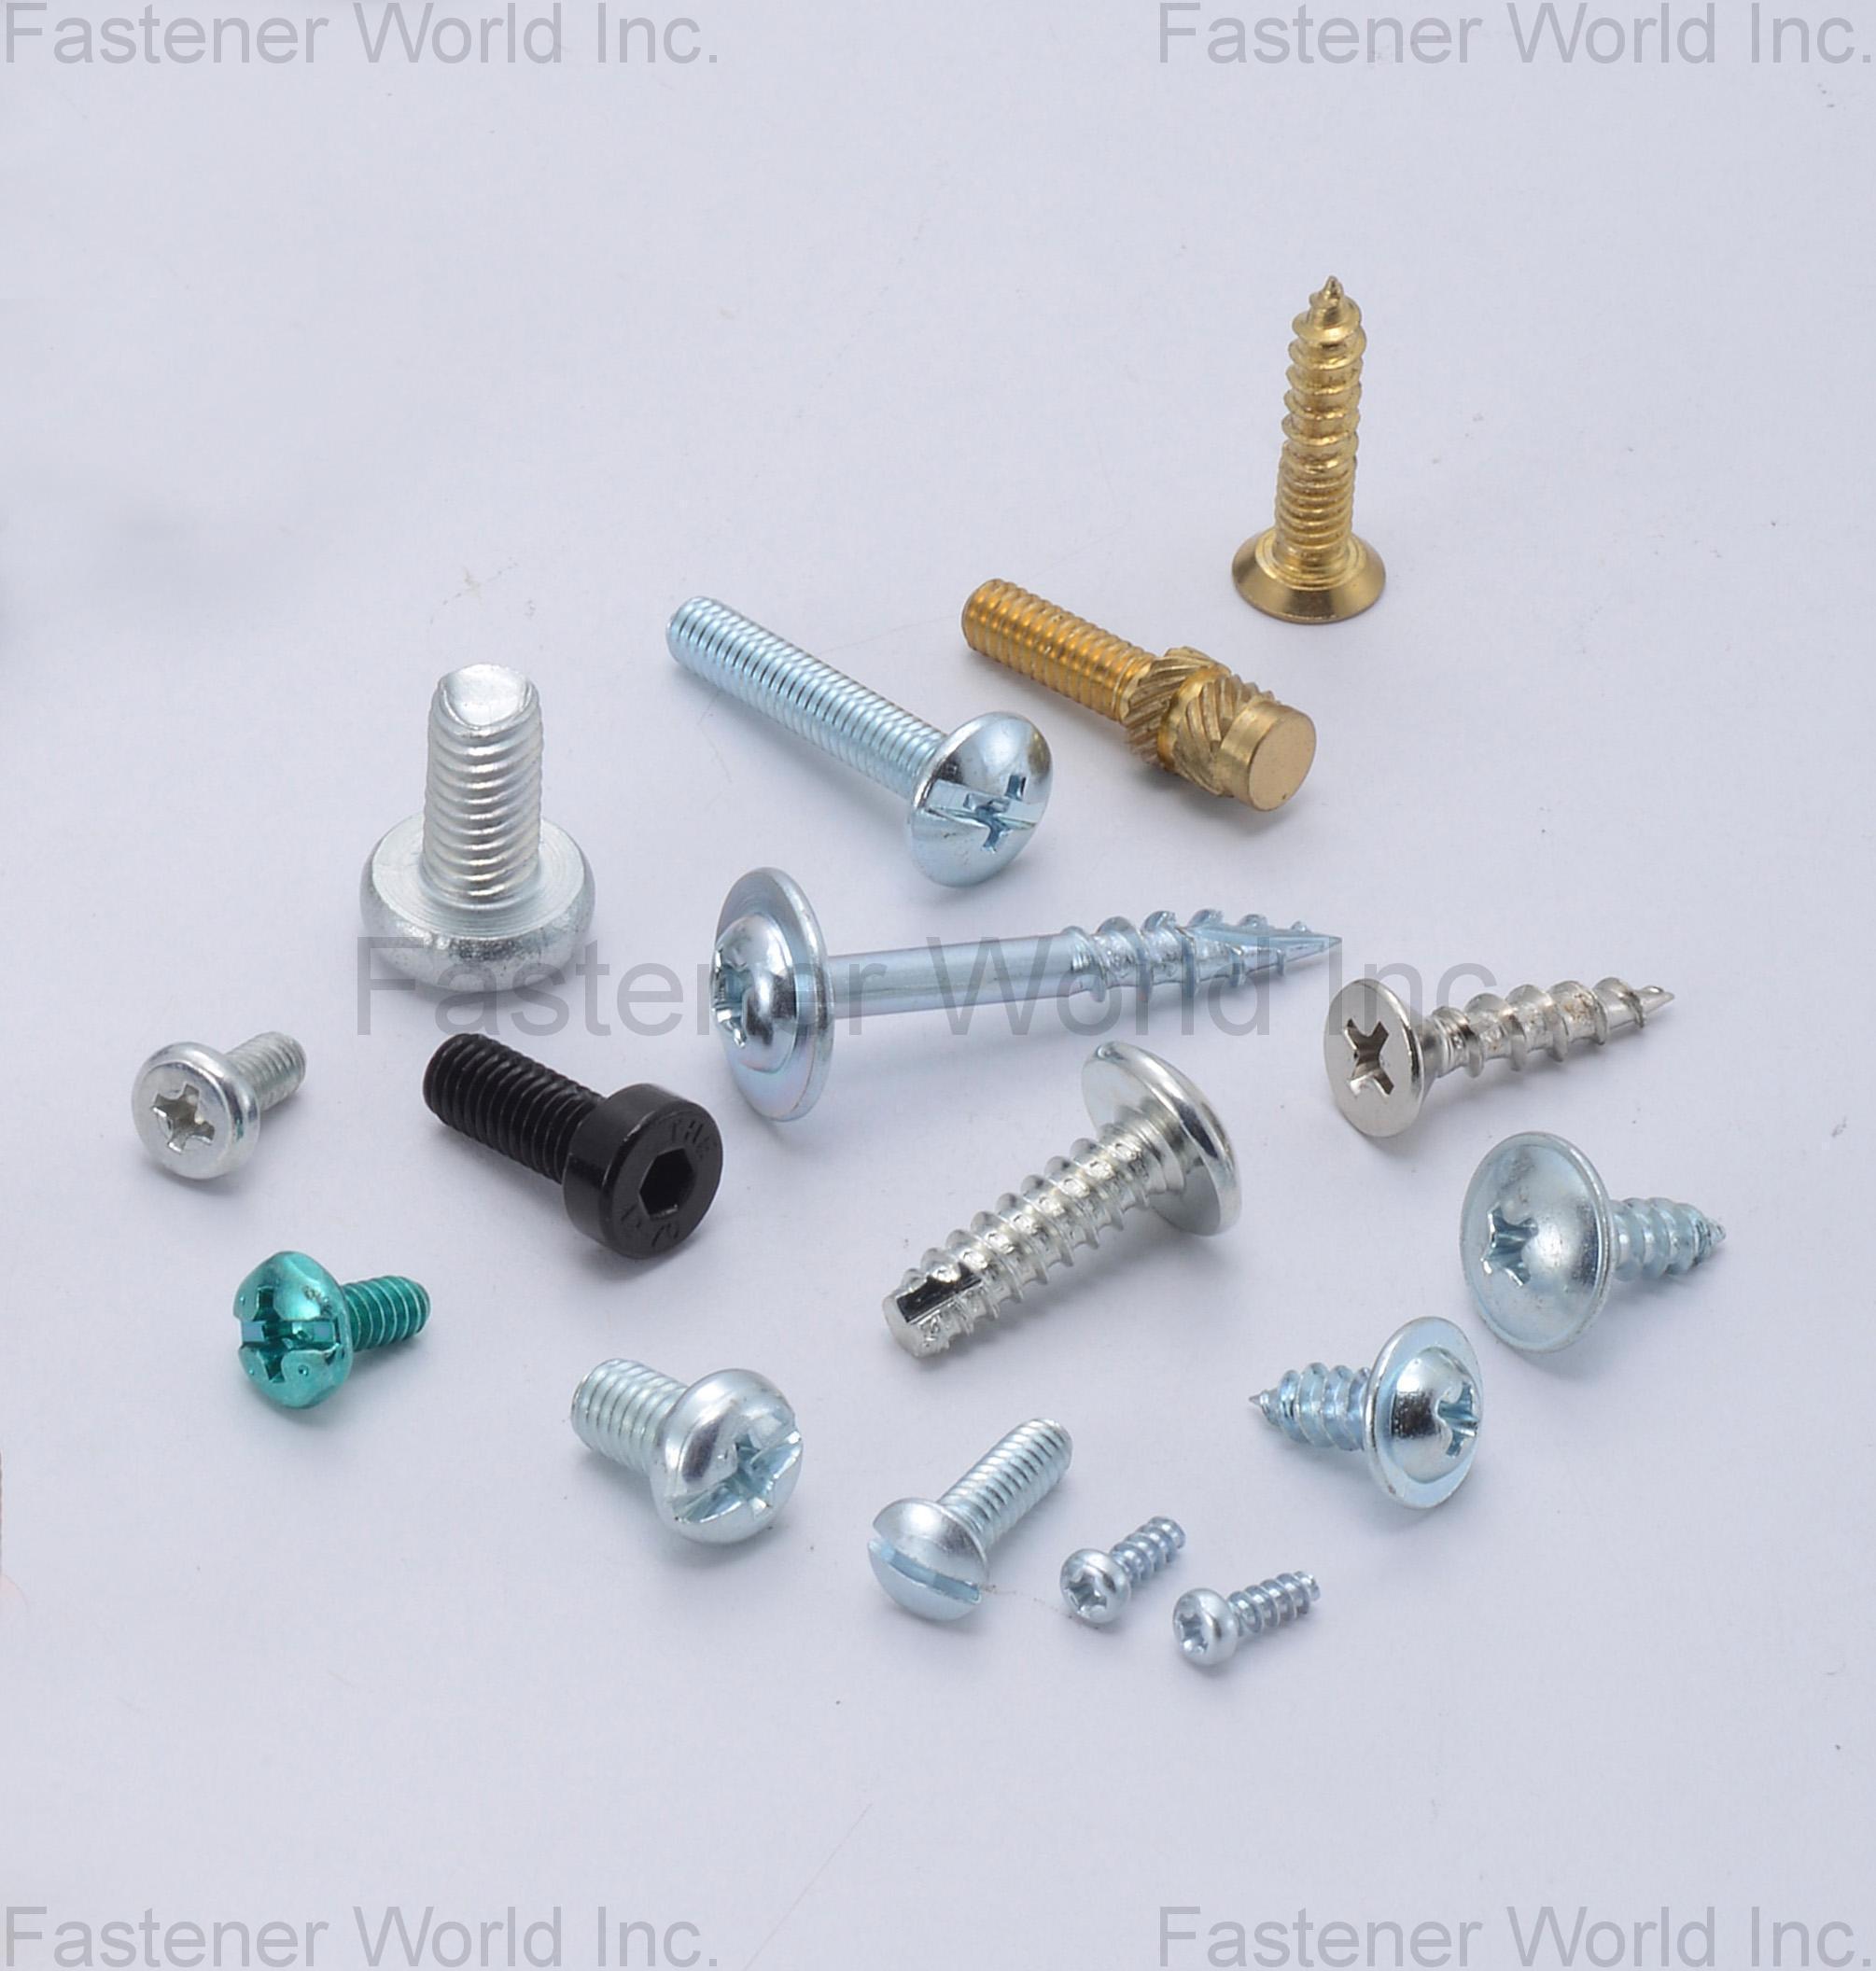 豪威爾螺絲工業有限公司 , 特殊螺絲,特殊螺栓,SEMS組合螺絲,不銹鋼螺絲,華司